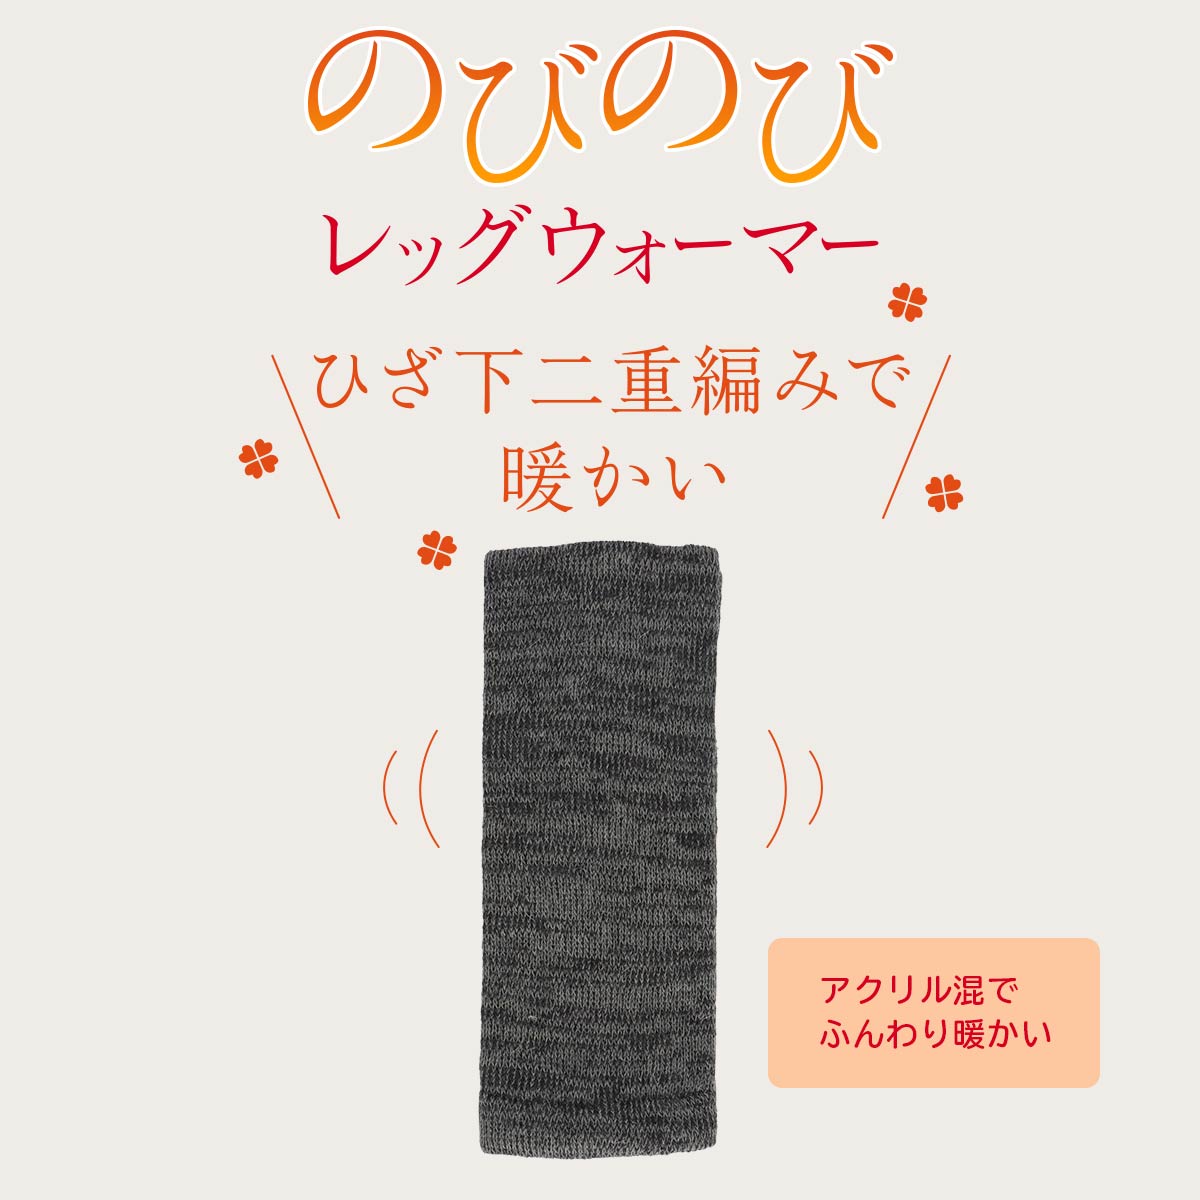 快歩主義 ナイガイ 日本製 温か 毛混 履きくちくちのびのび 二重編みレッグウォーマー レディース ソックス